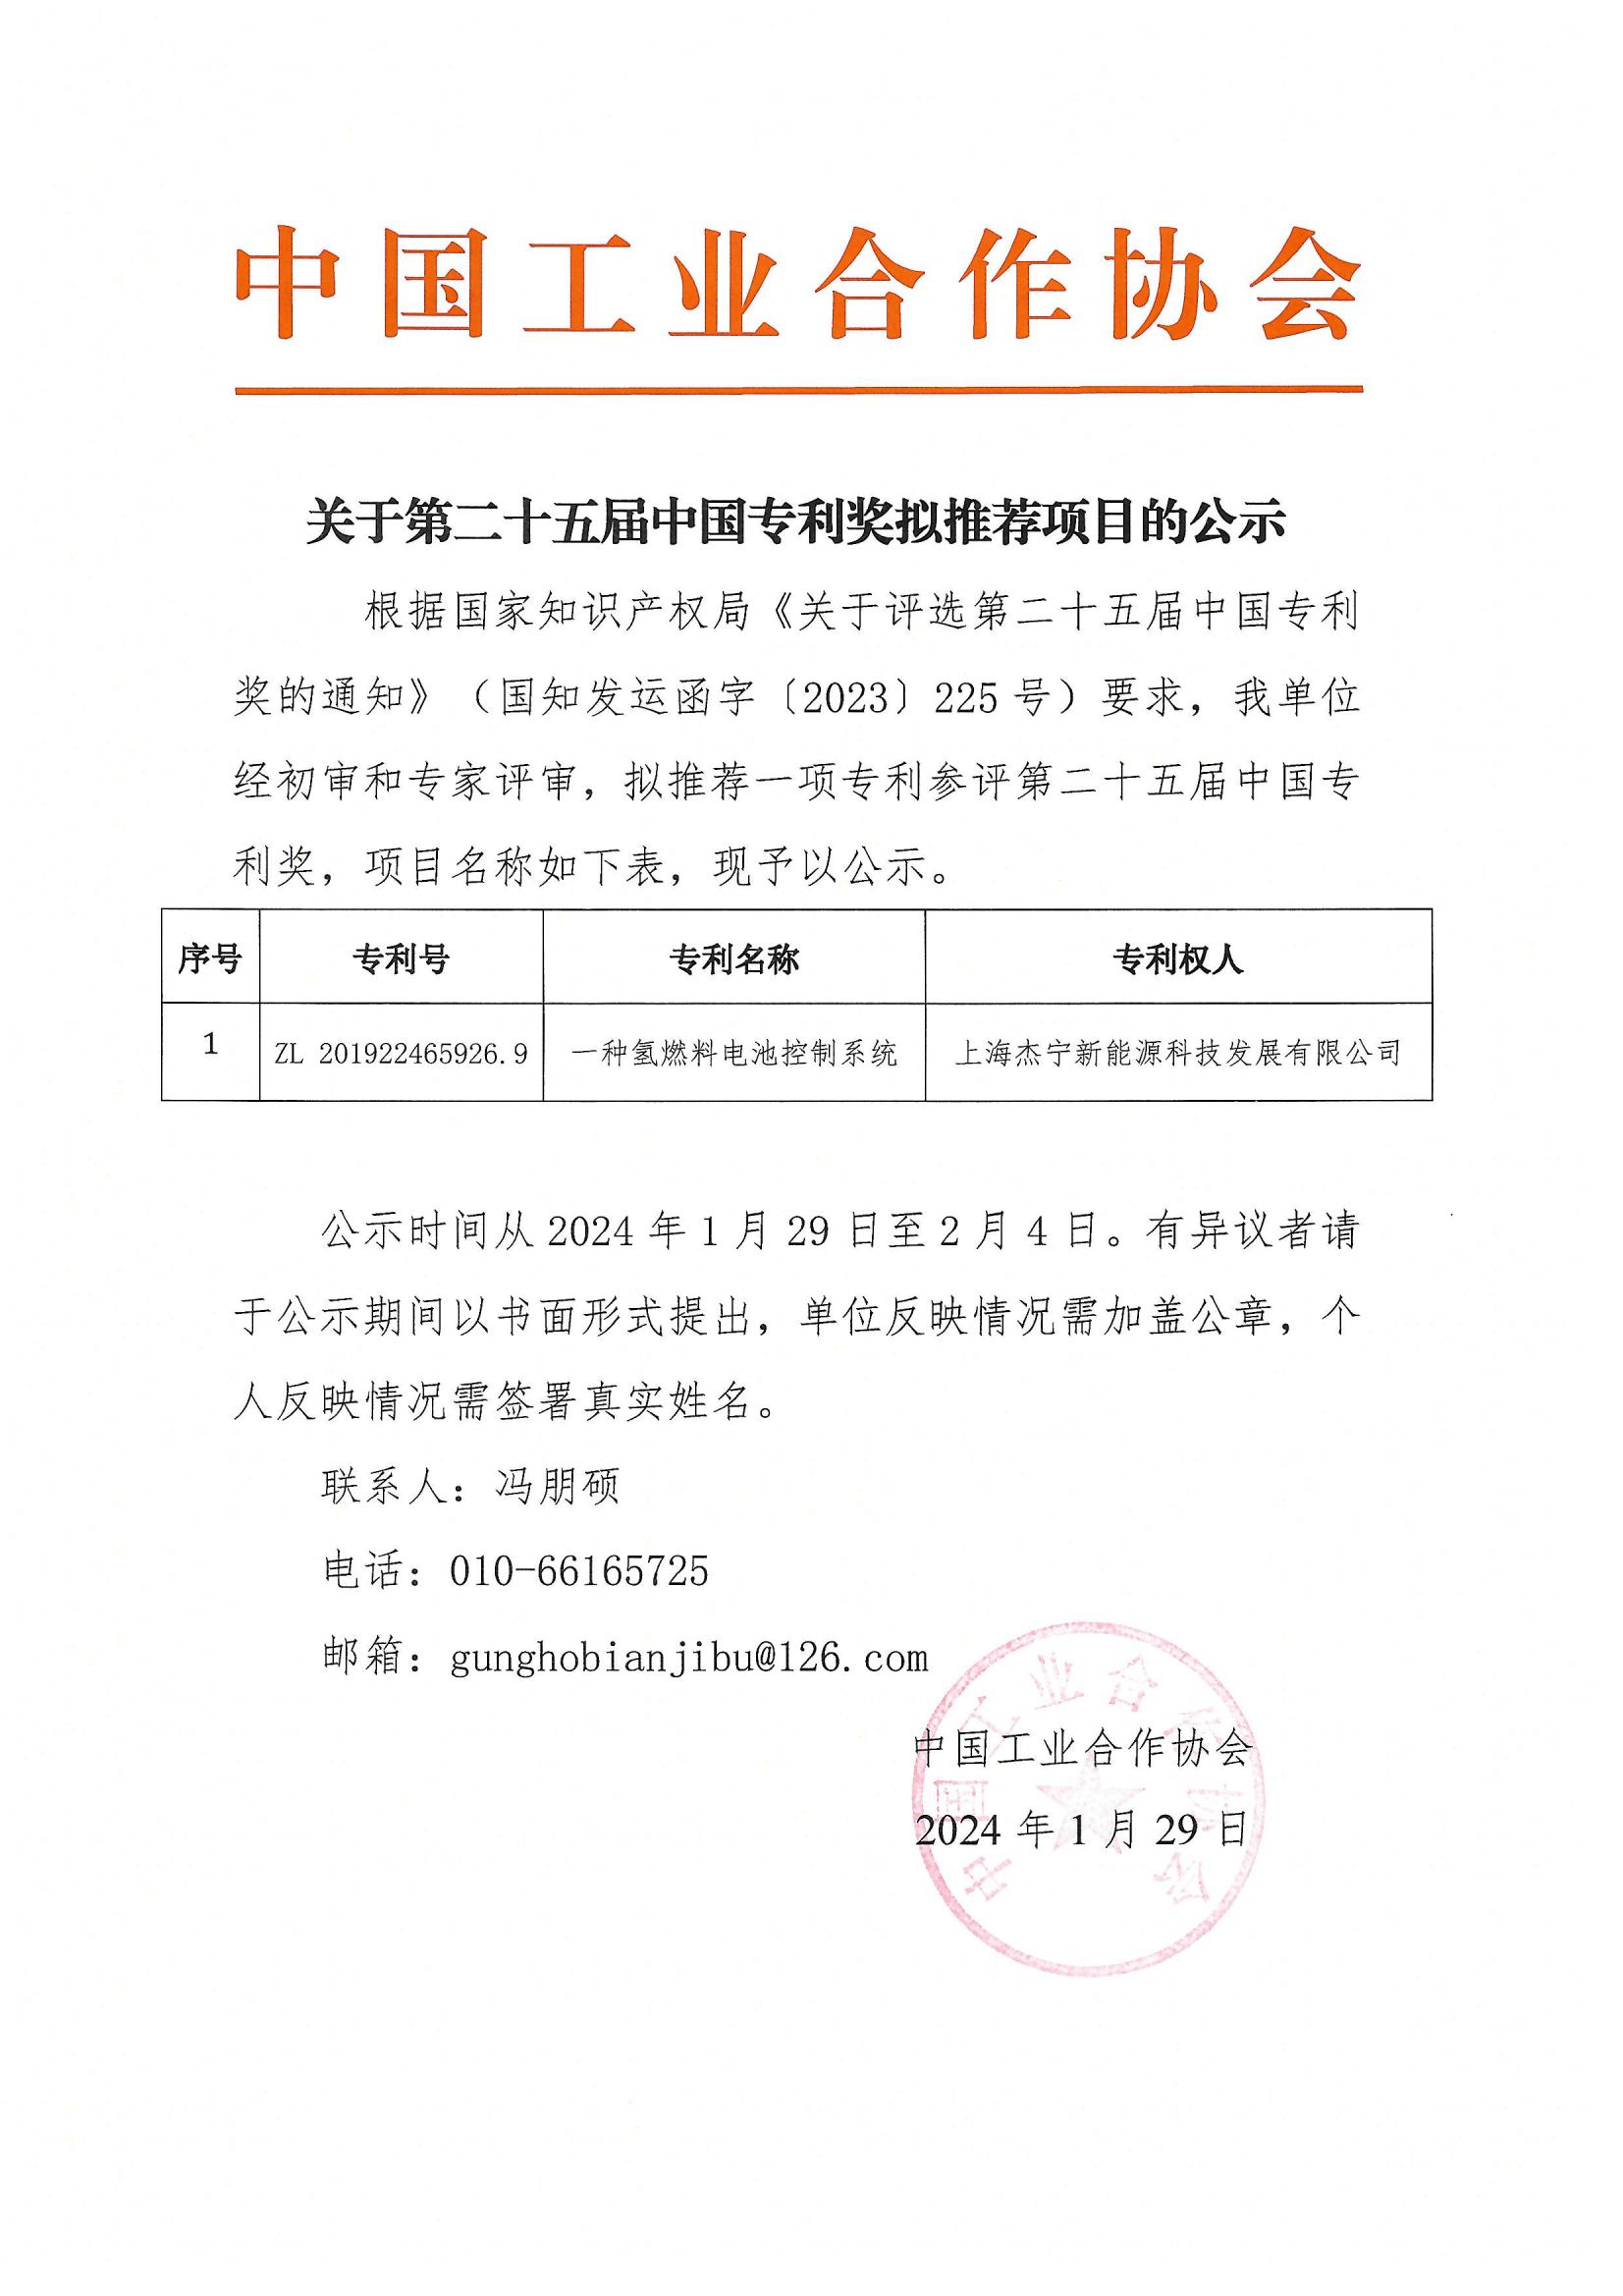 第二十五届中国专利奖推荐函、公示_01.png